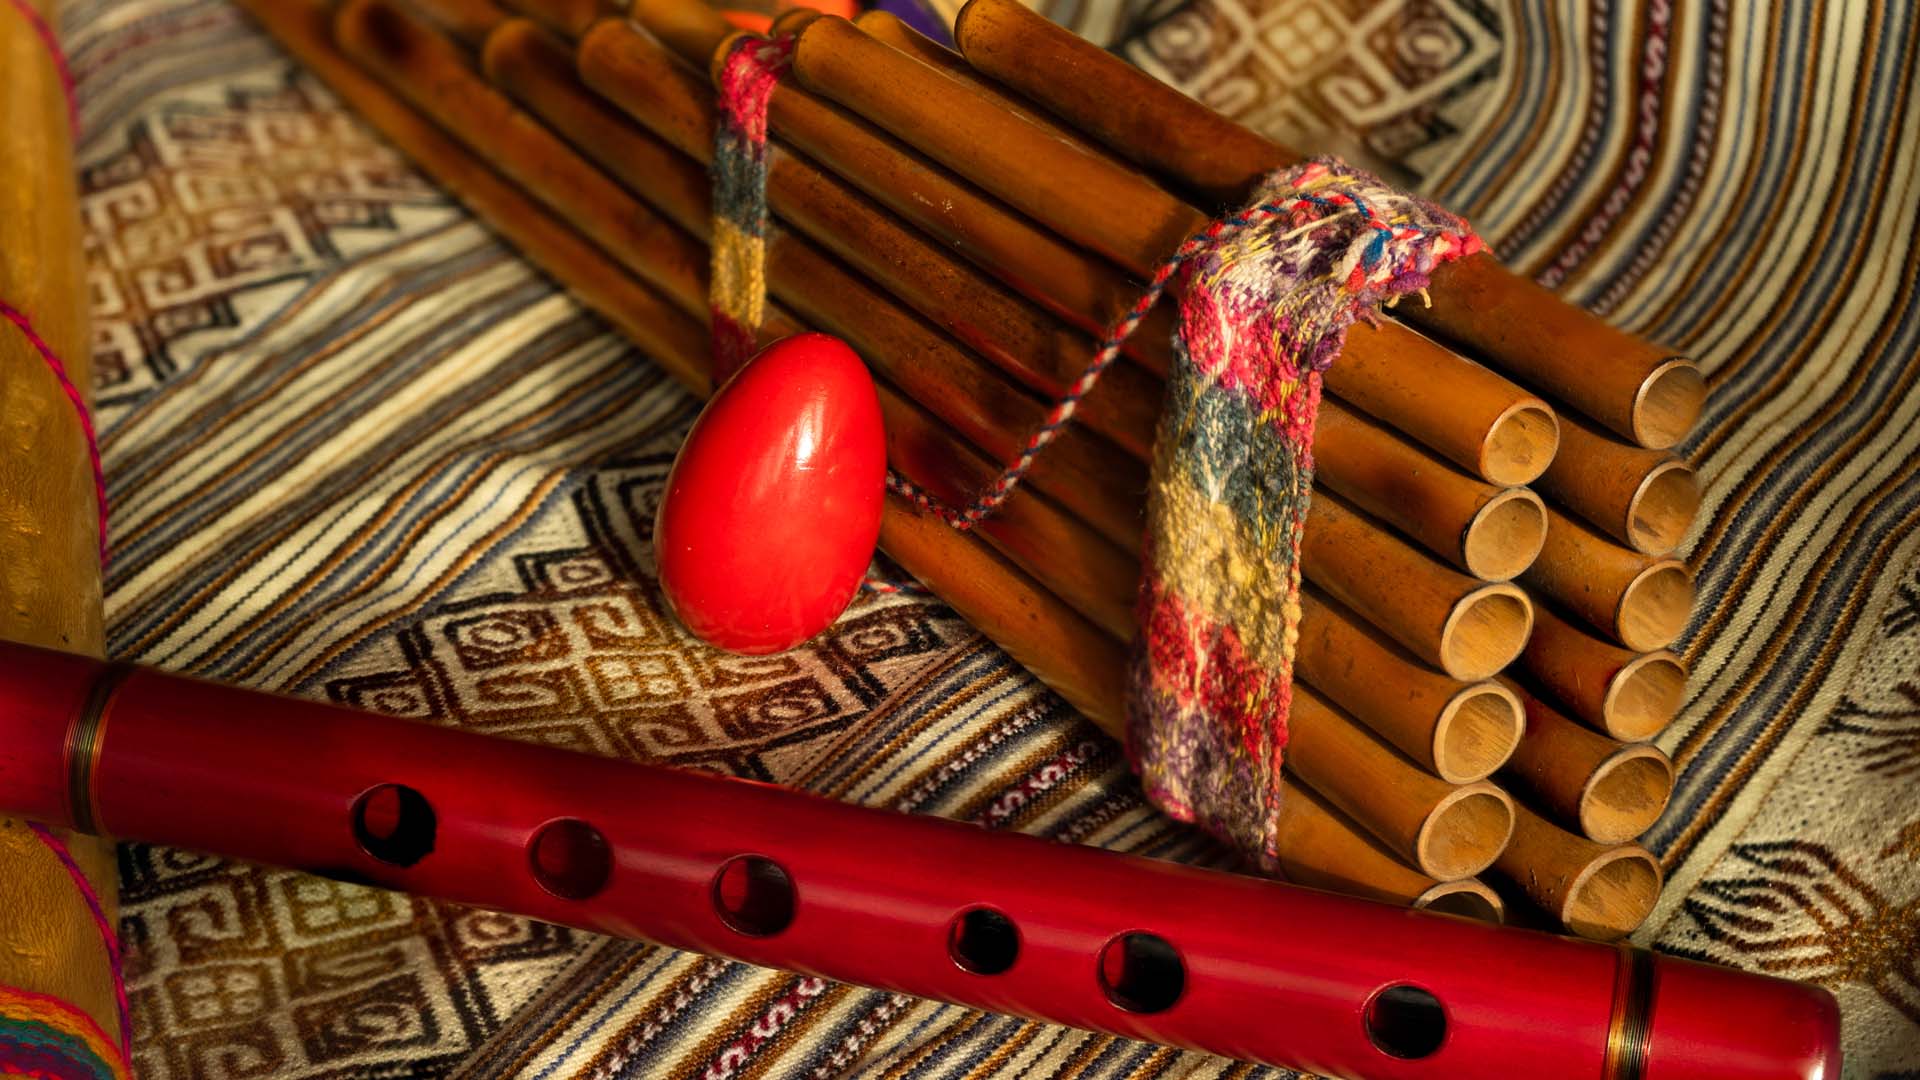 Cuáles son los instrumentos musicales oriundos del Perú?